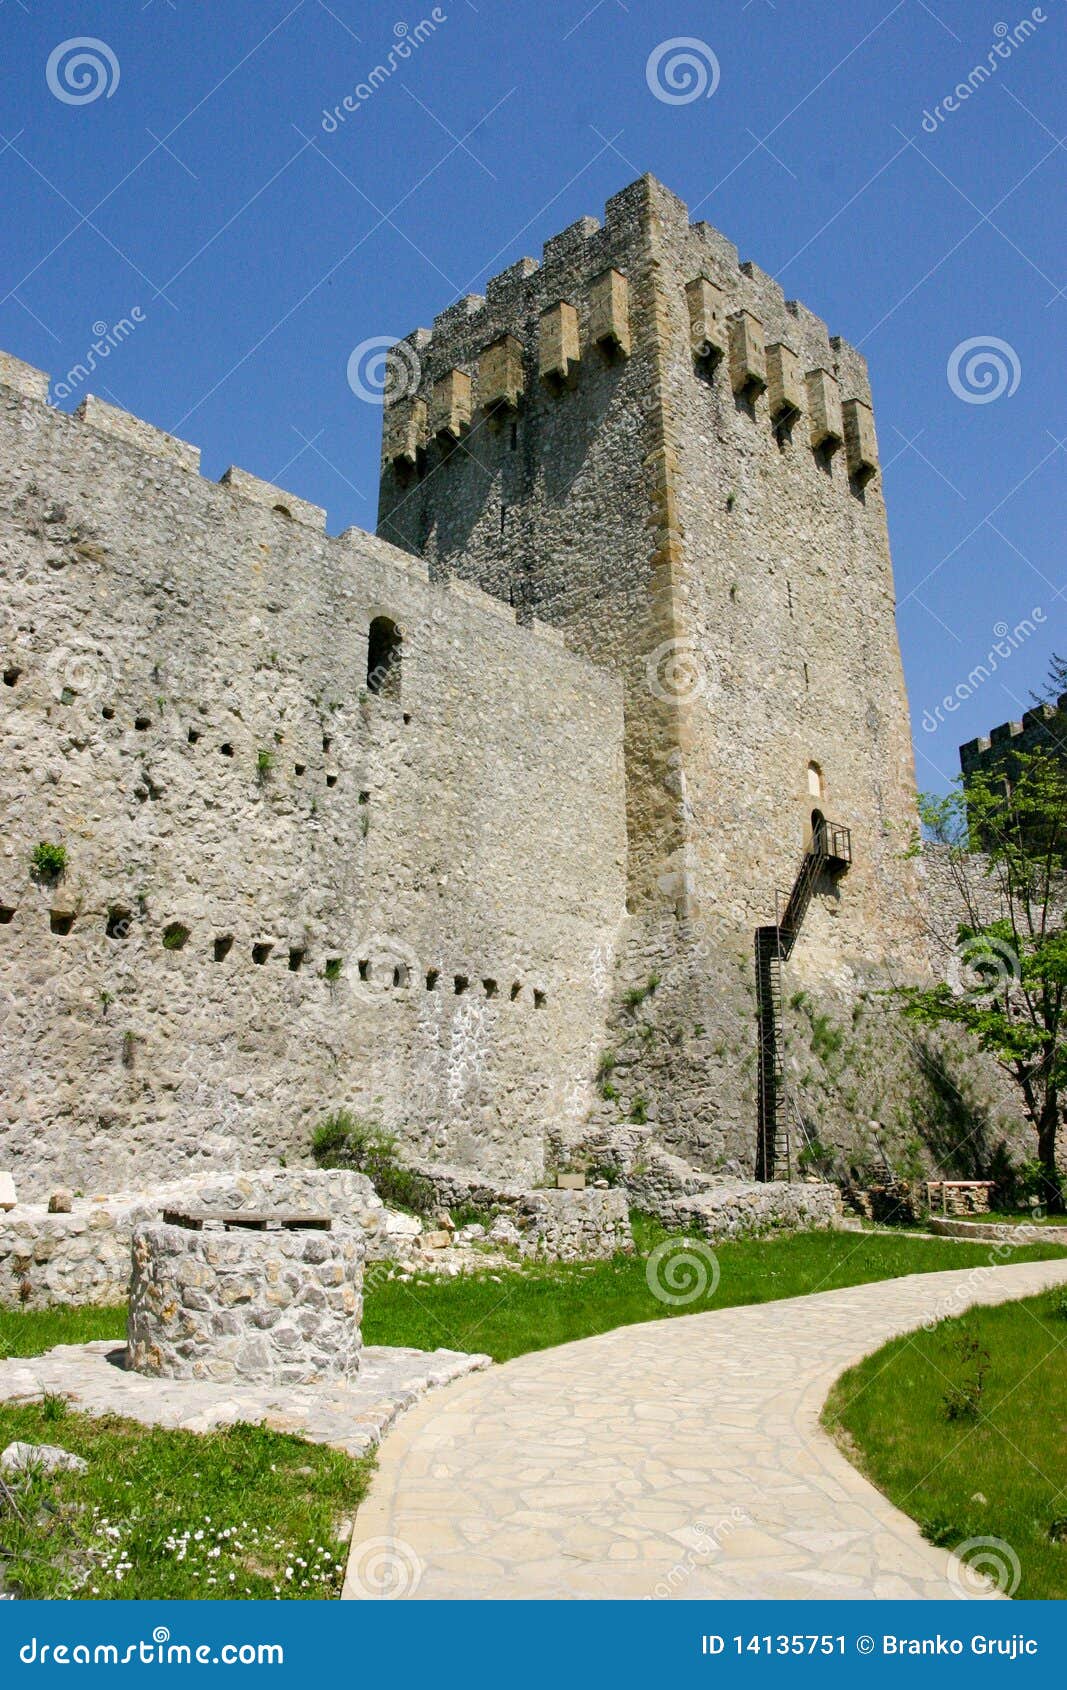 manasija castle